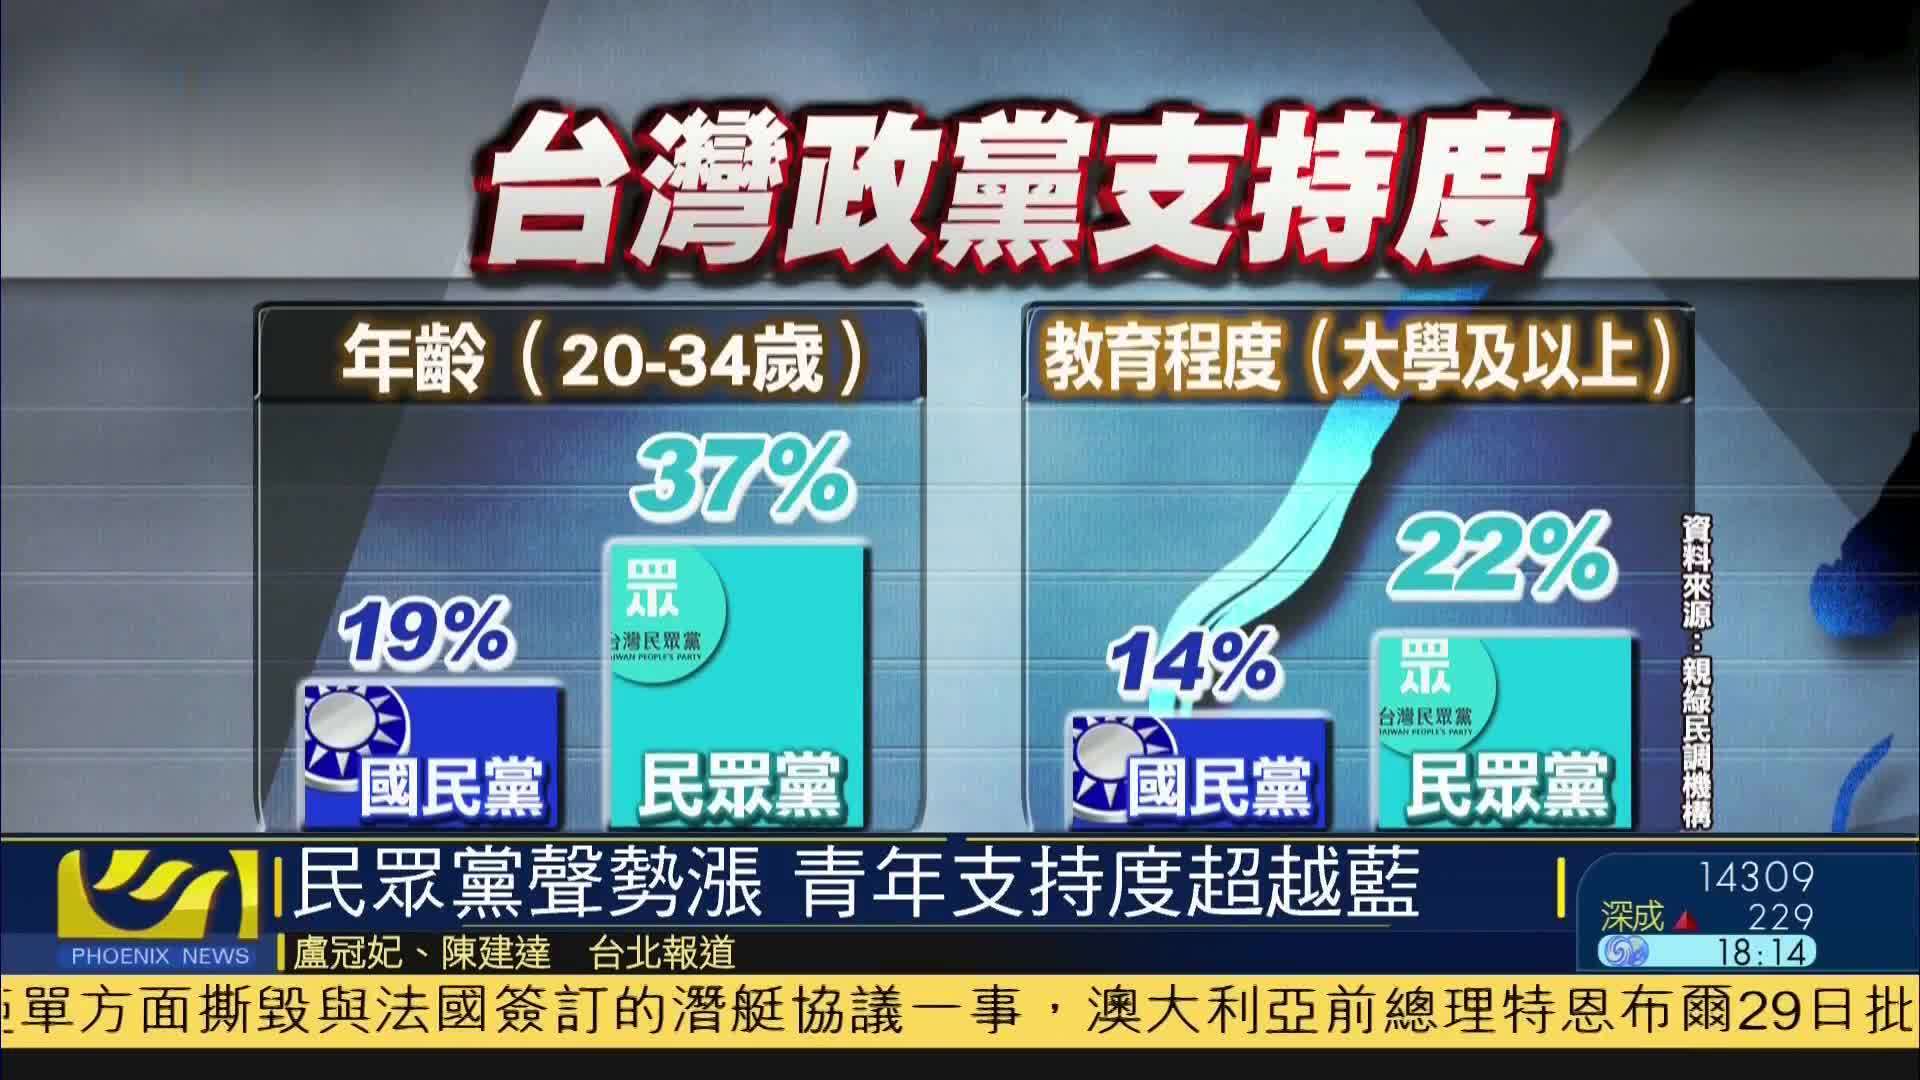 台湾民众党声势涨 青年支持度超越国民党